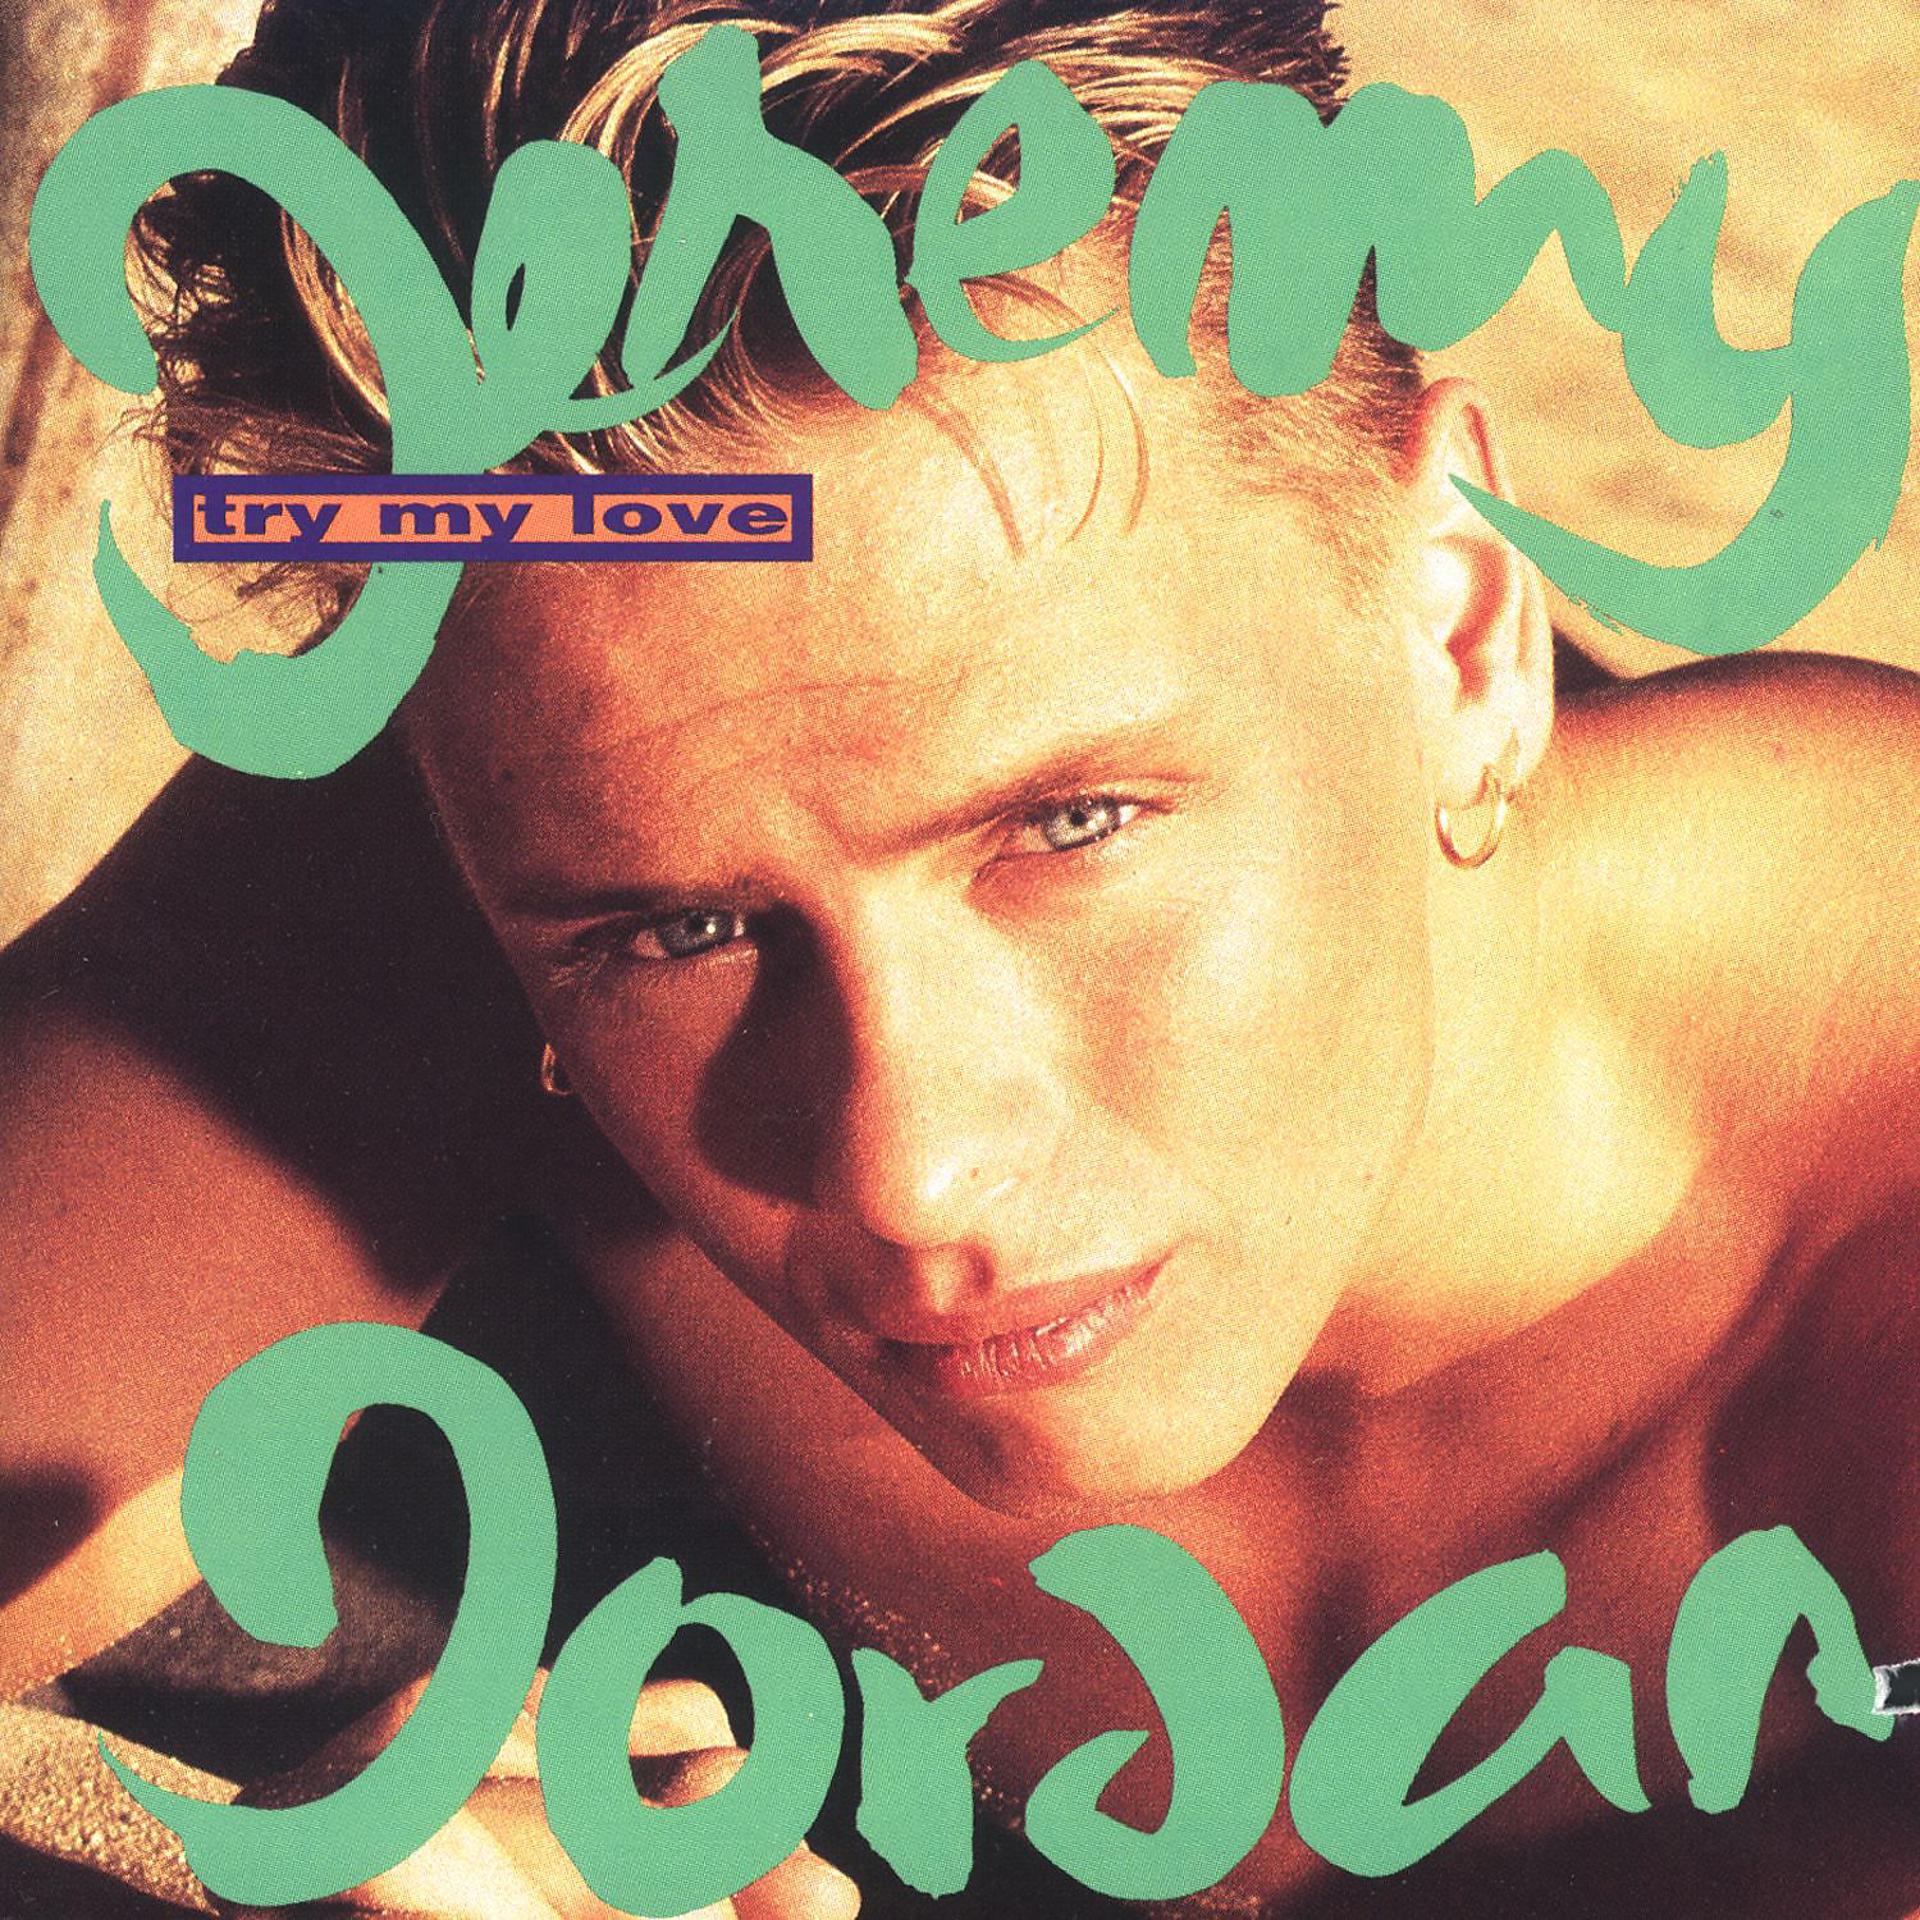 Jeremy jordan. Jeremy Jordan (Singer, born 1973). Jeremy Jordan - try my Love (1993). Jeremy Jordan ‎– the right kind of Love.